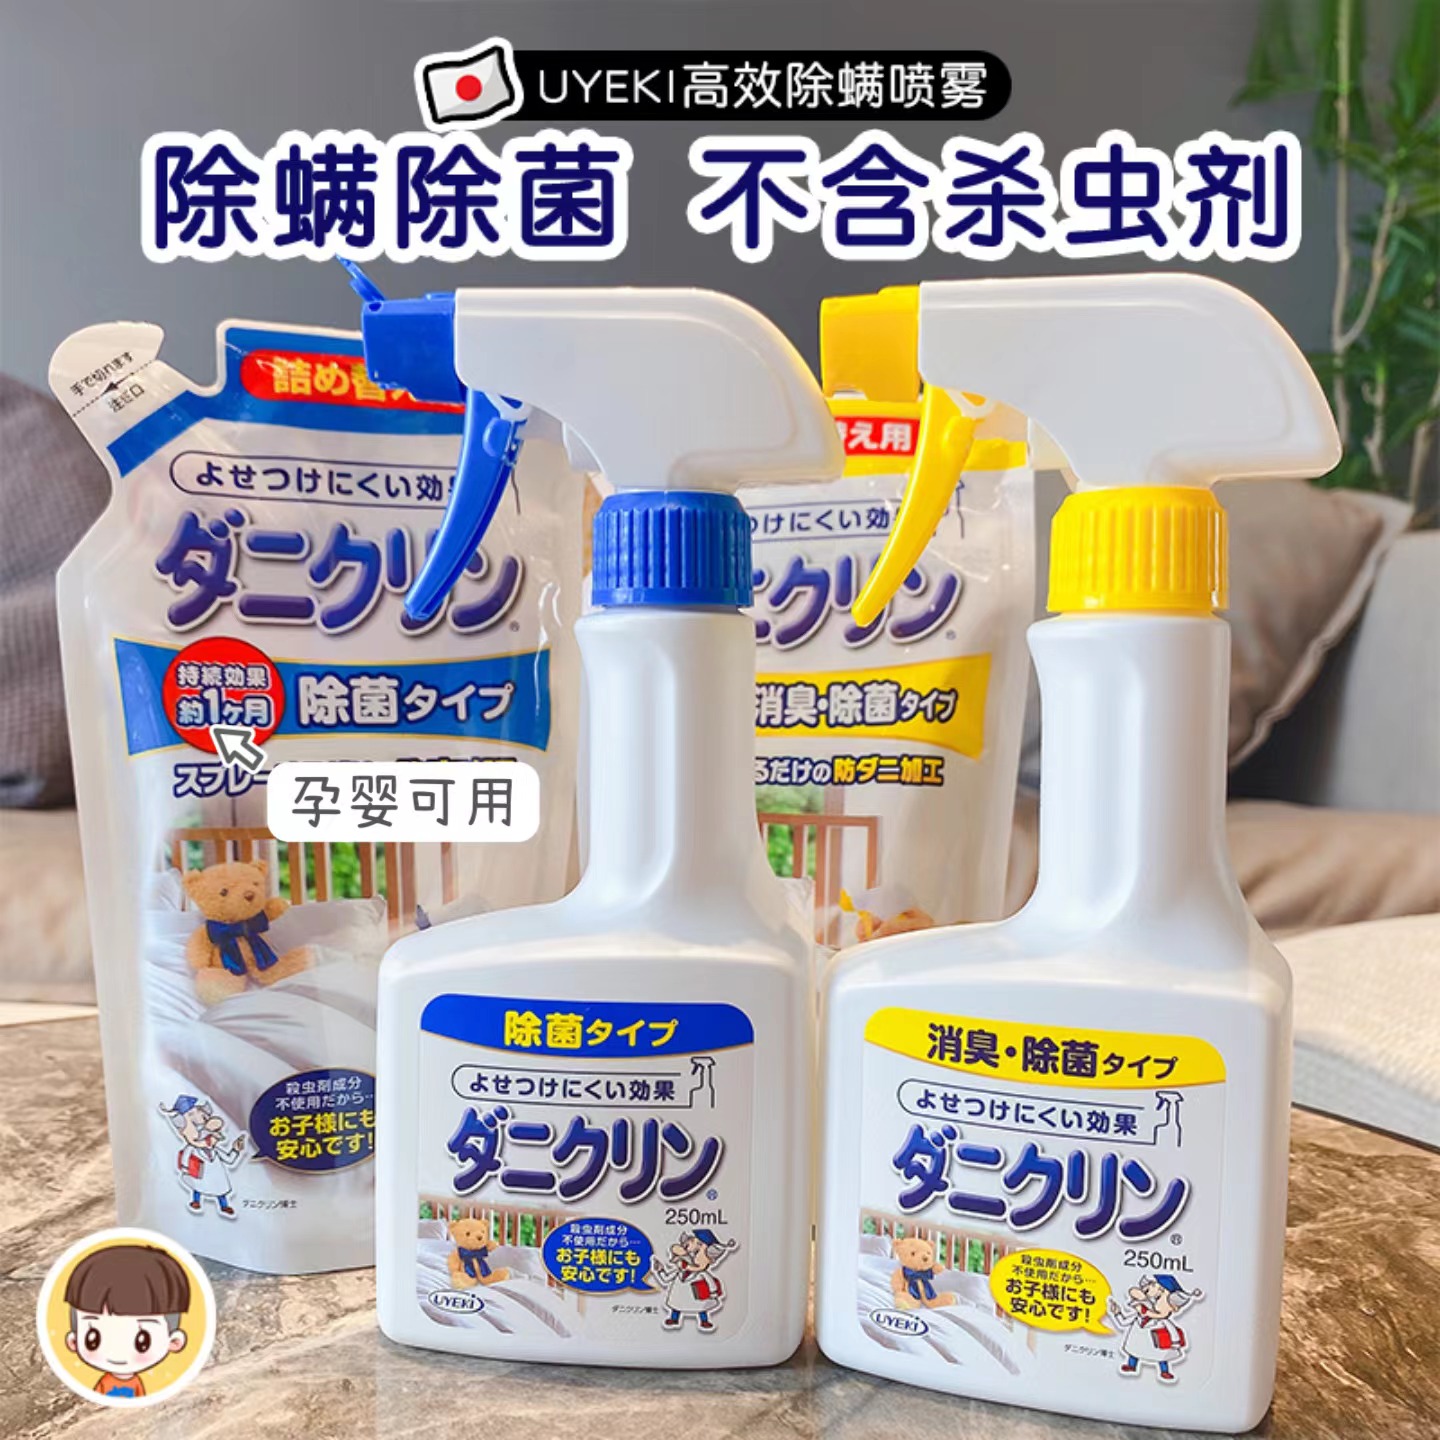 日本uyeki防螨除螨喷雾床上除虫